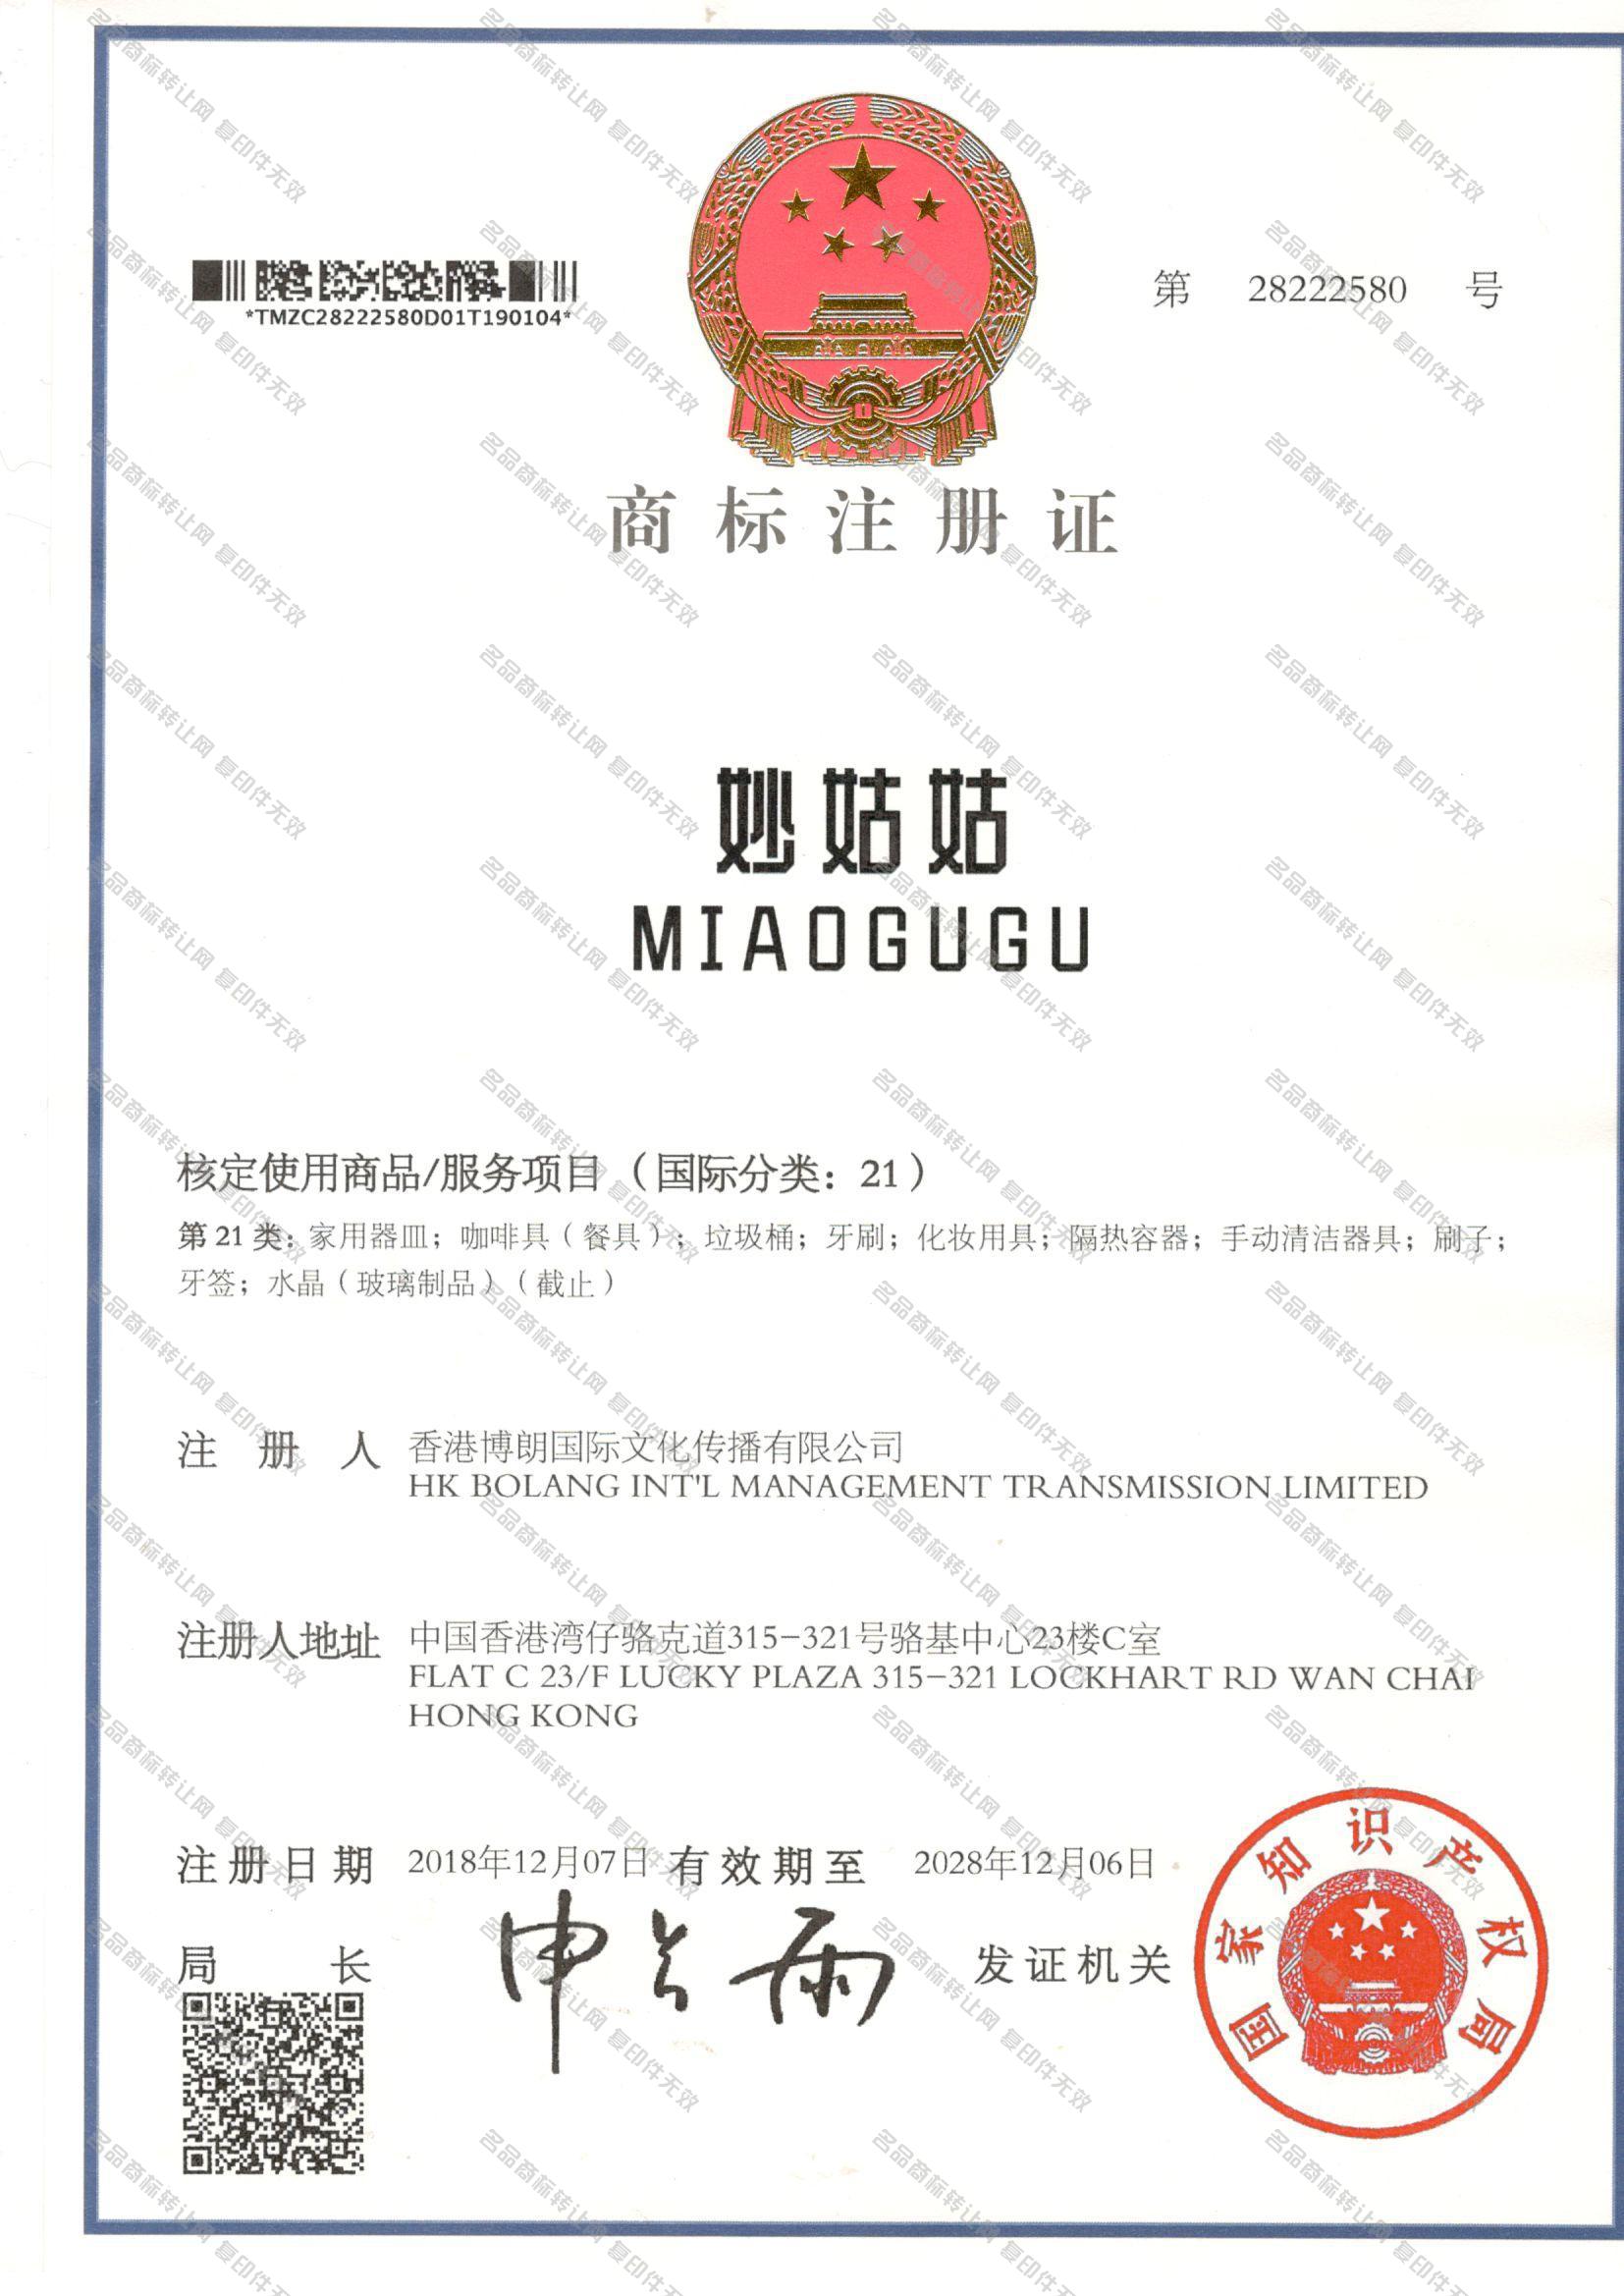 妙姑姑 MIAOGUGU注册证